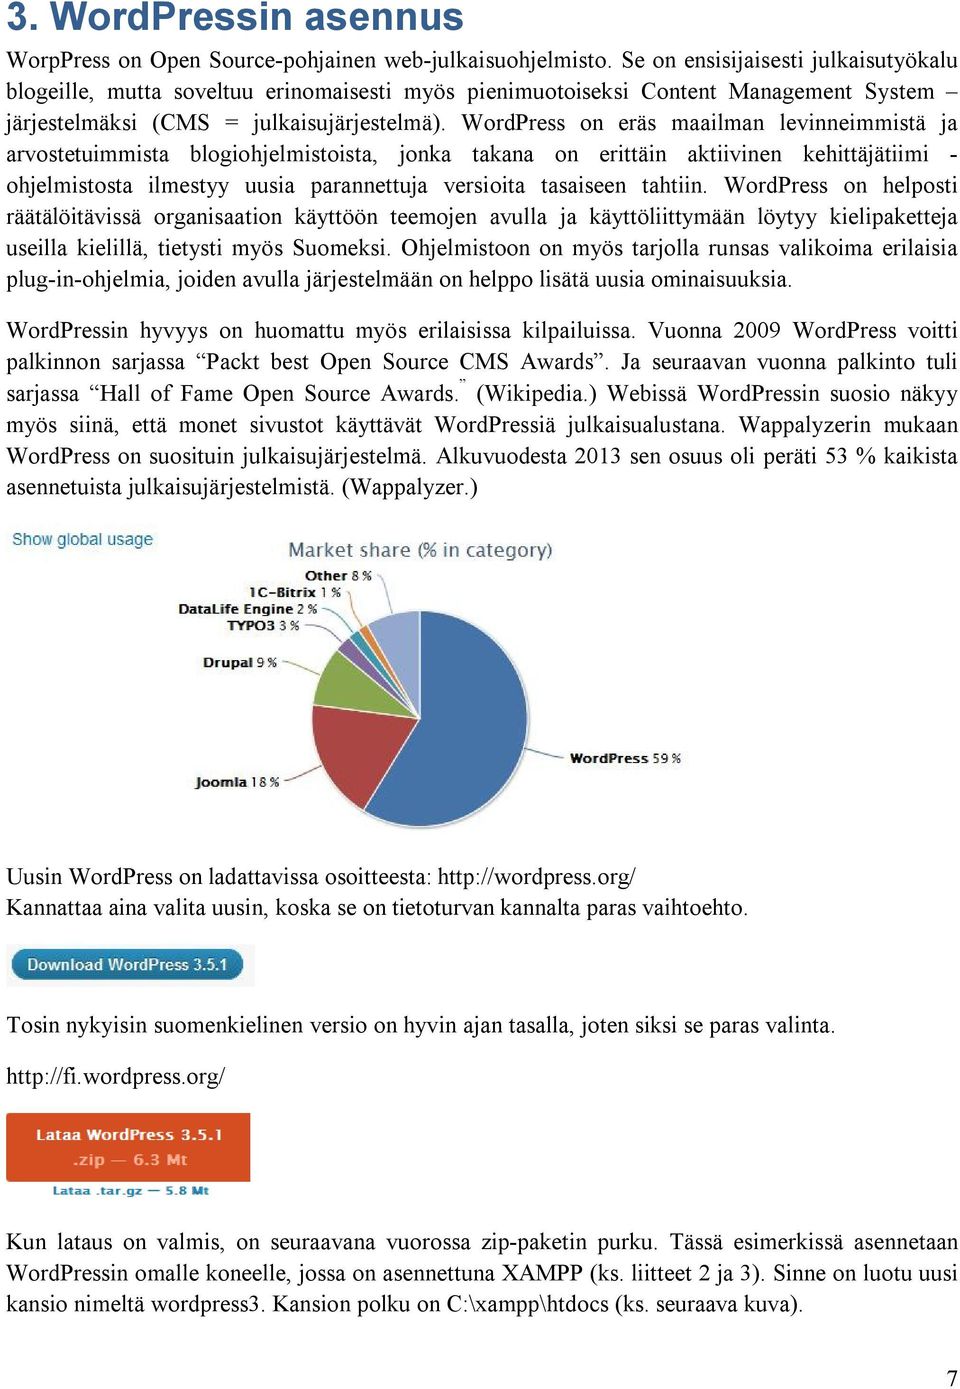 WordPress on eräs maailman levinneimmistä ja arvostetuimmista blogiohjelmistoista, jonka takana on erittäin aktiivinen kehittäjätiimi - ohjelmistosta ilmestyy uusia parannettuja versioita tasaiseen